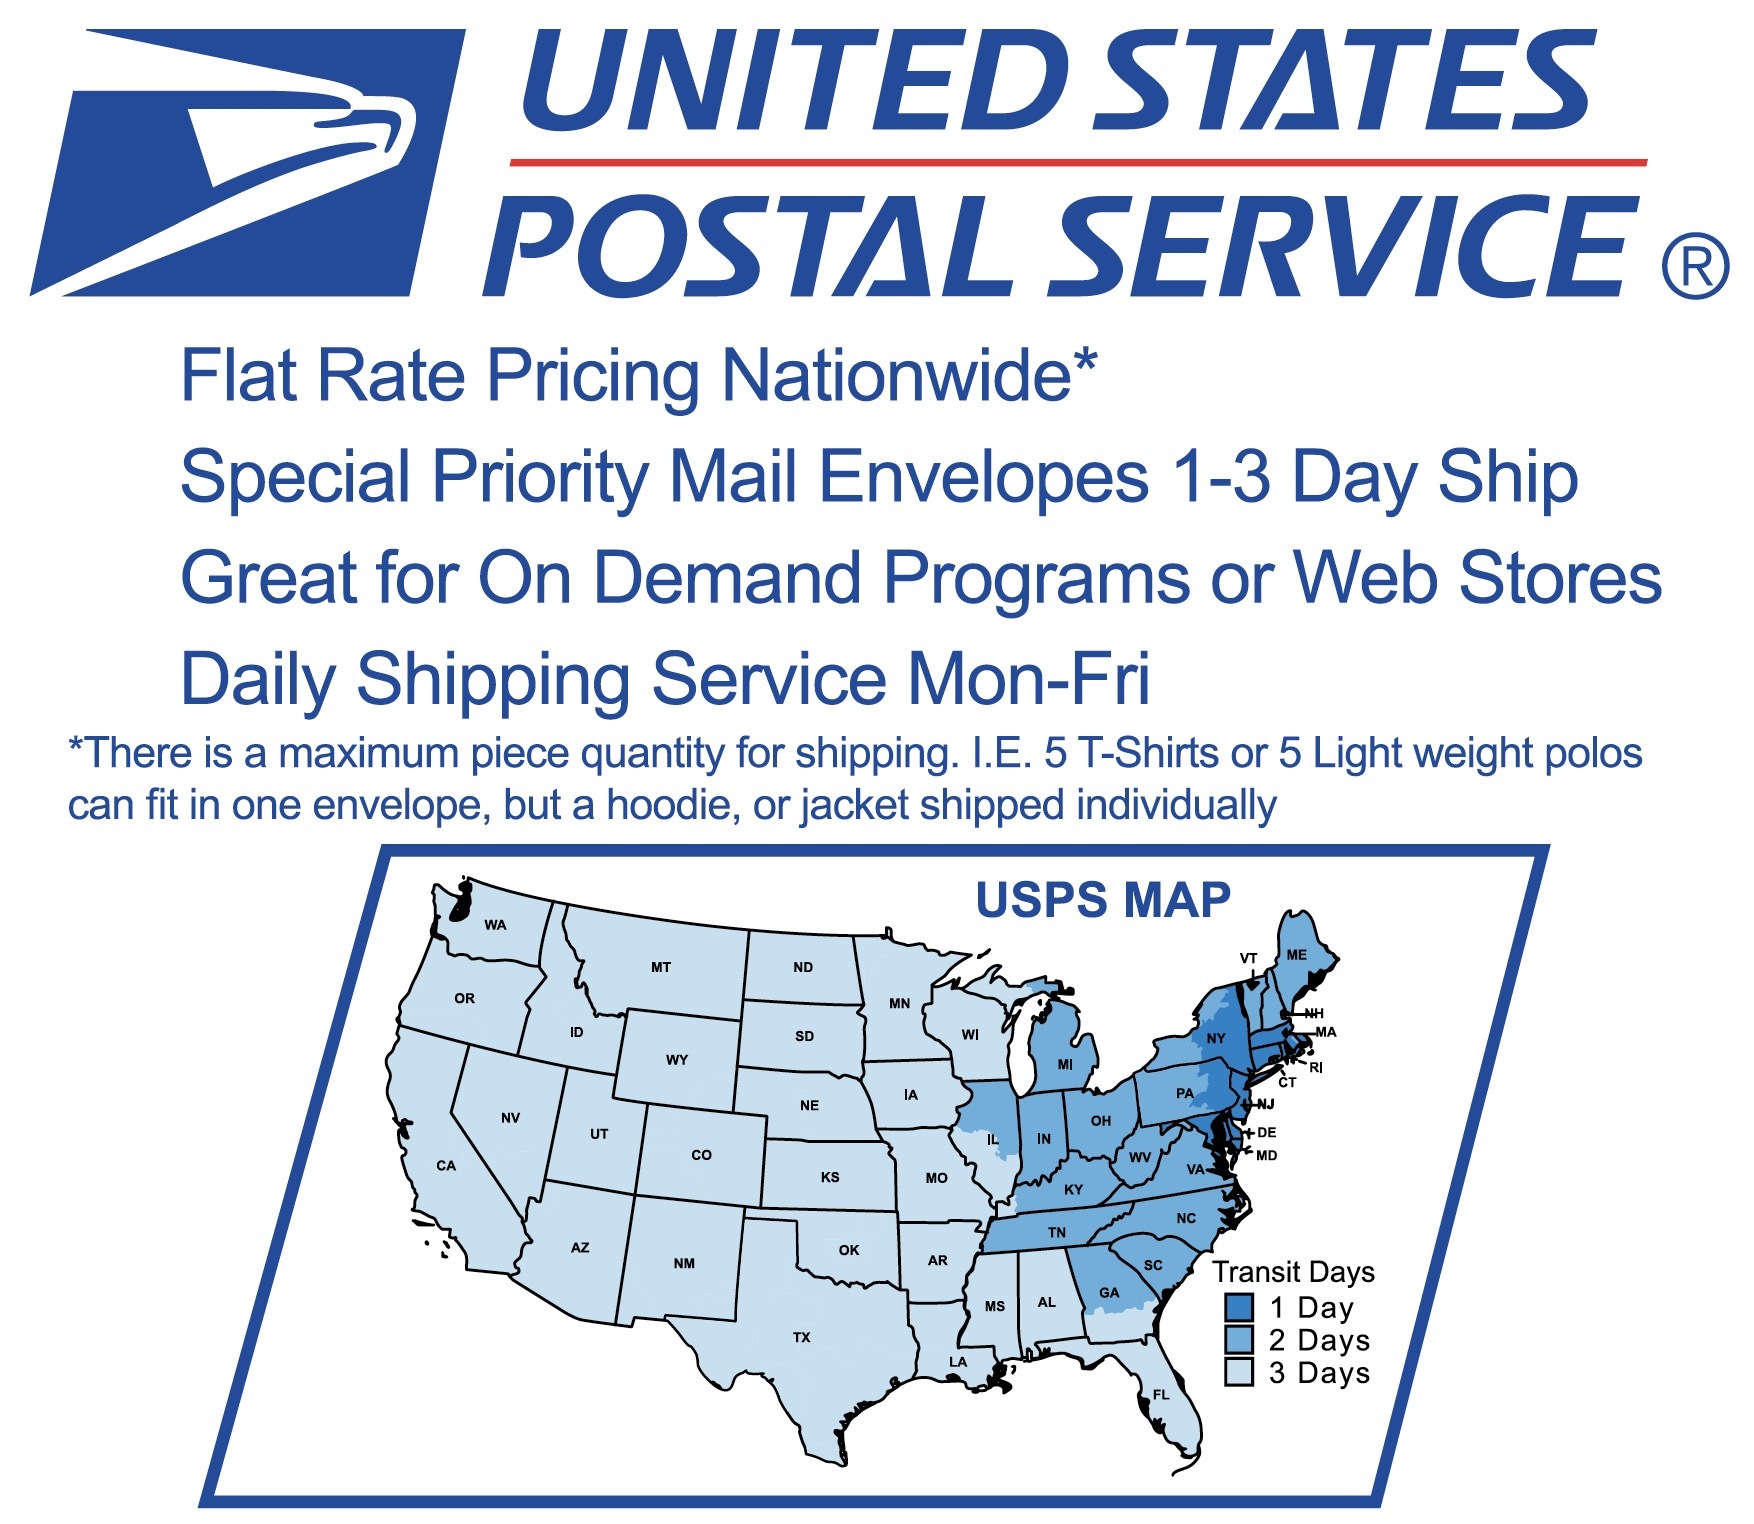 USPS Shipping Image